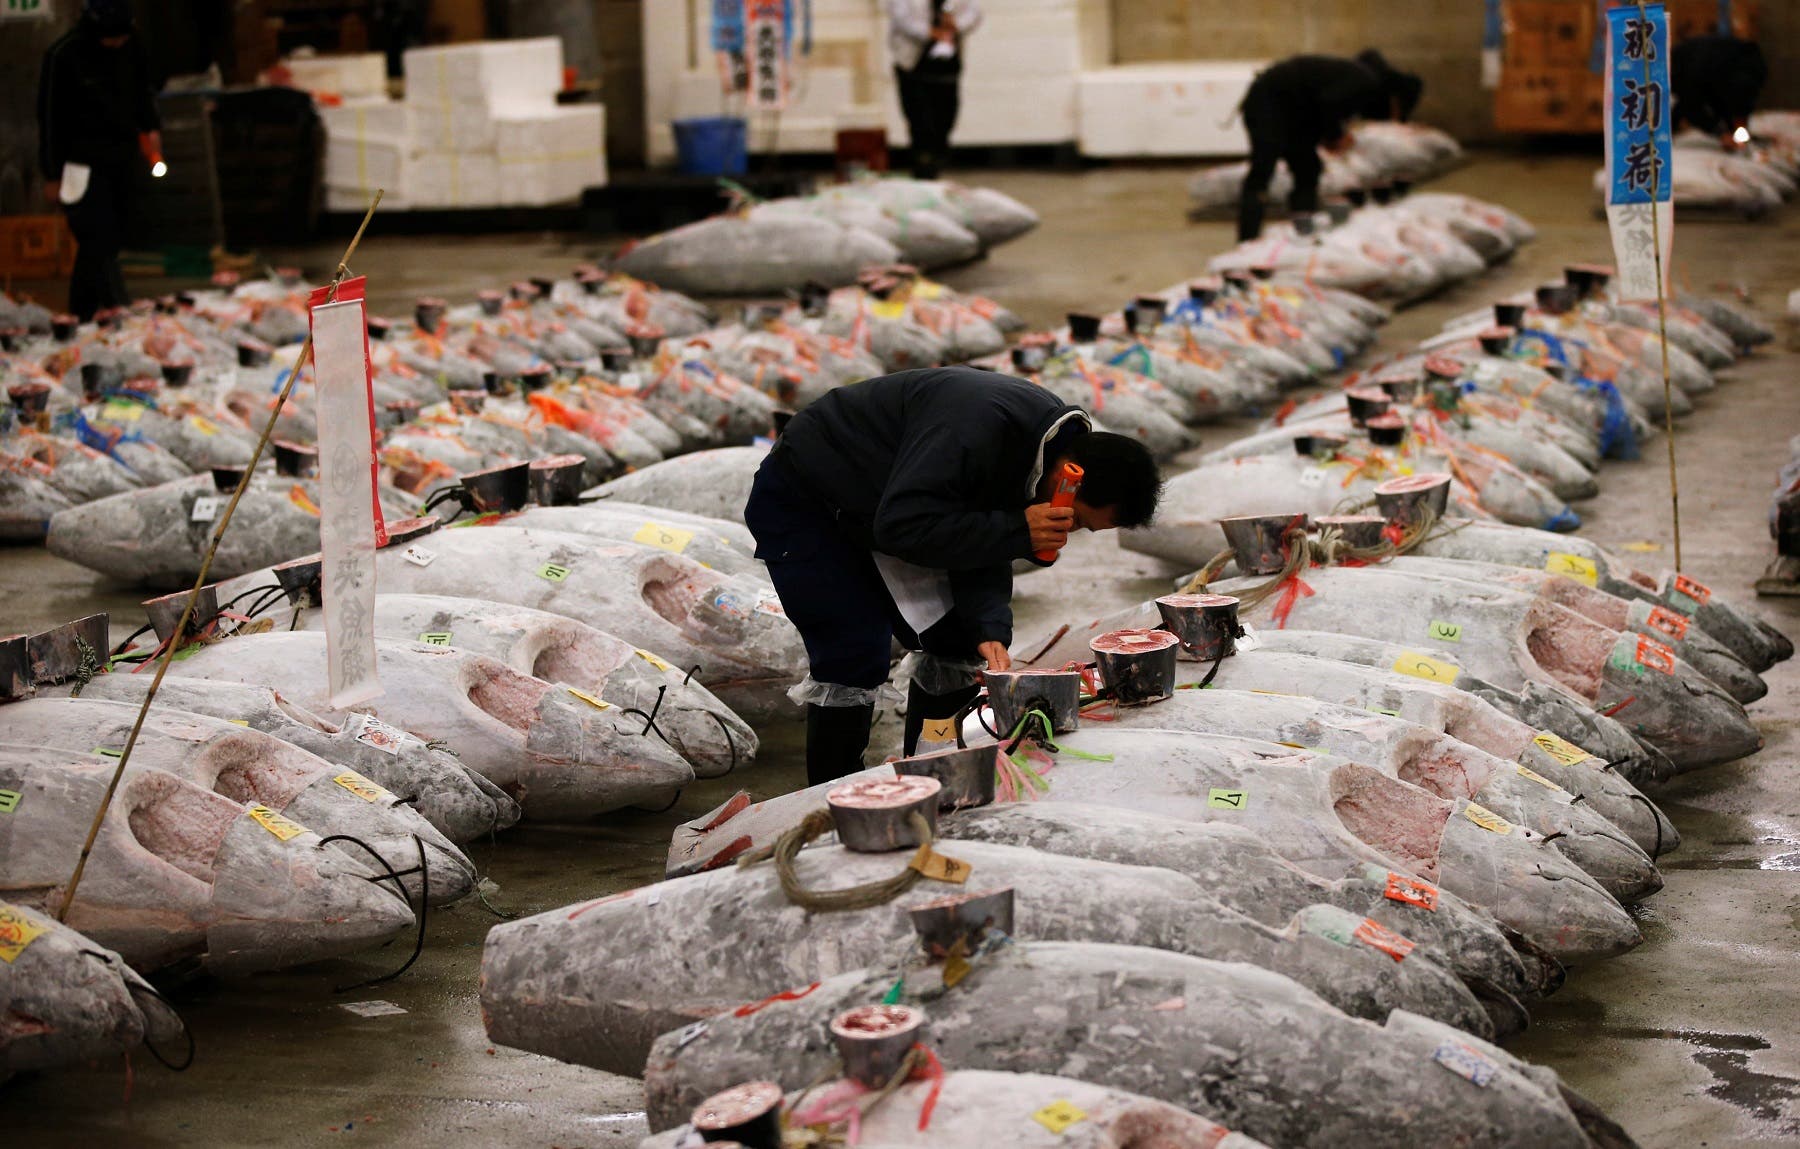 Цукидзи рыбный рынок в токио фото